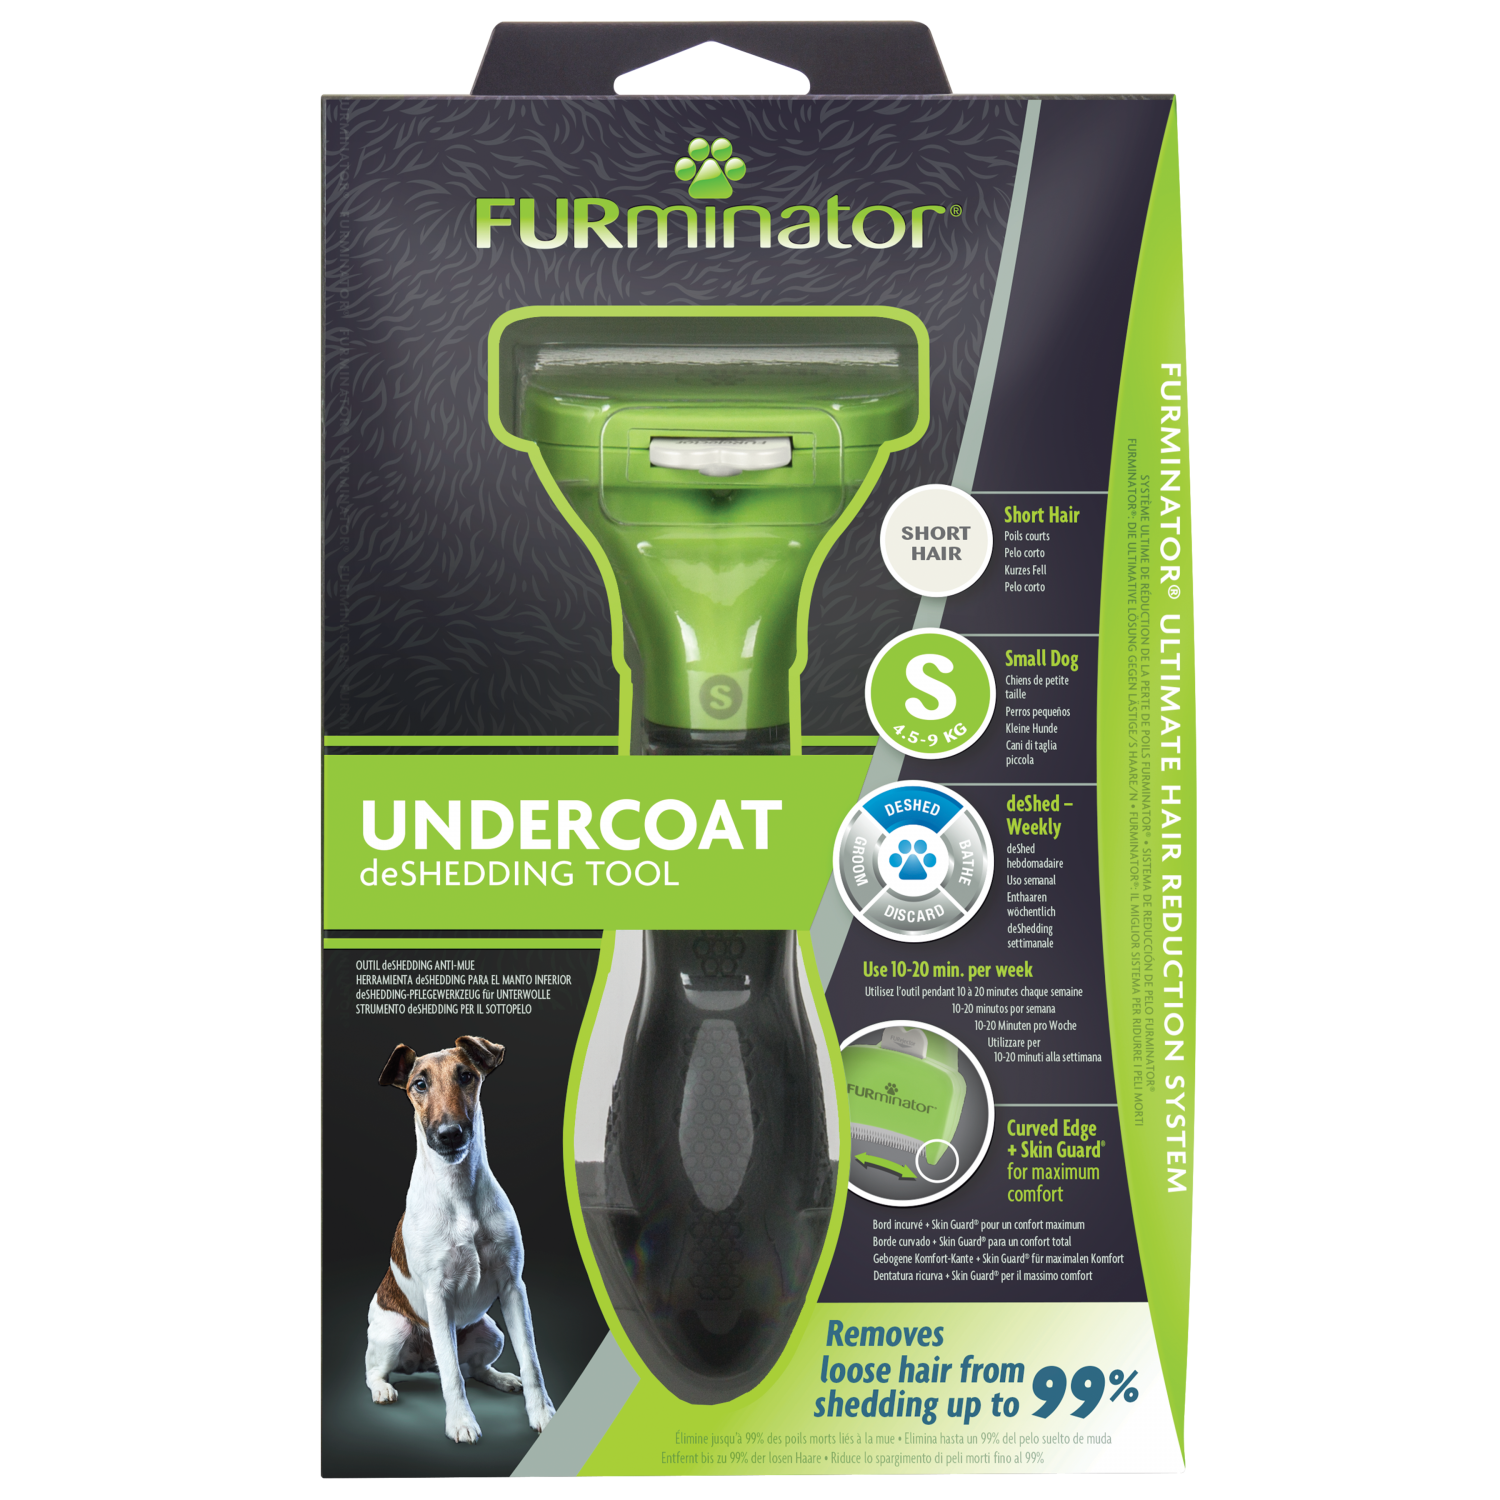 FURminator Undercoat deShedding Tool Small Dog Short Hair